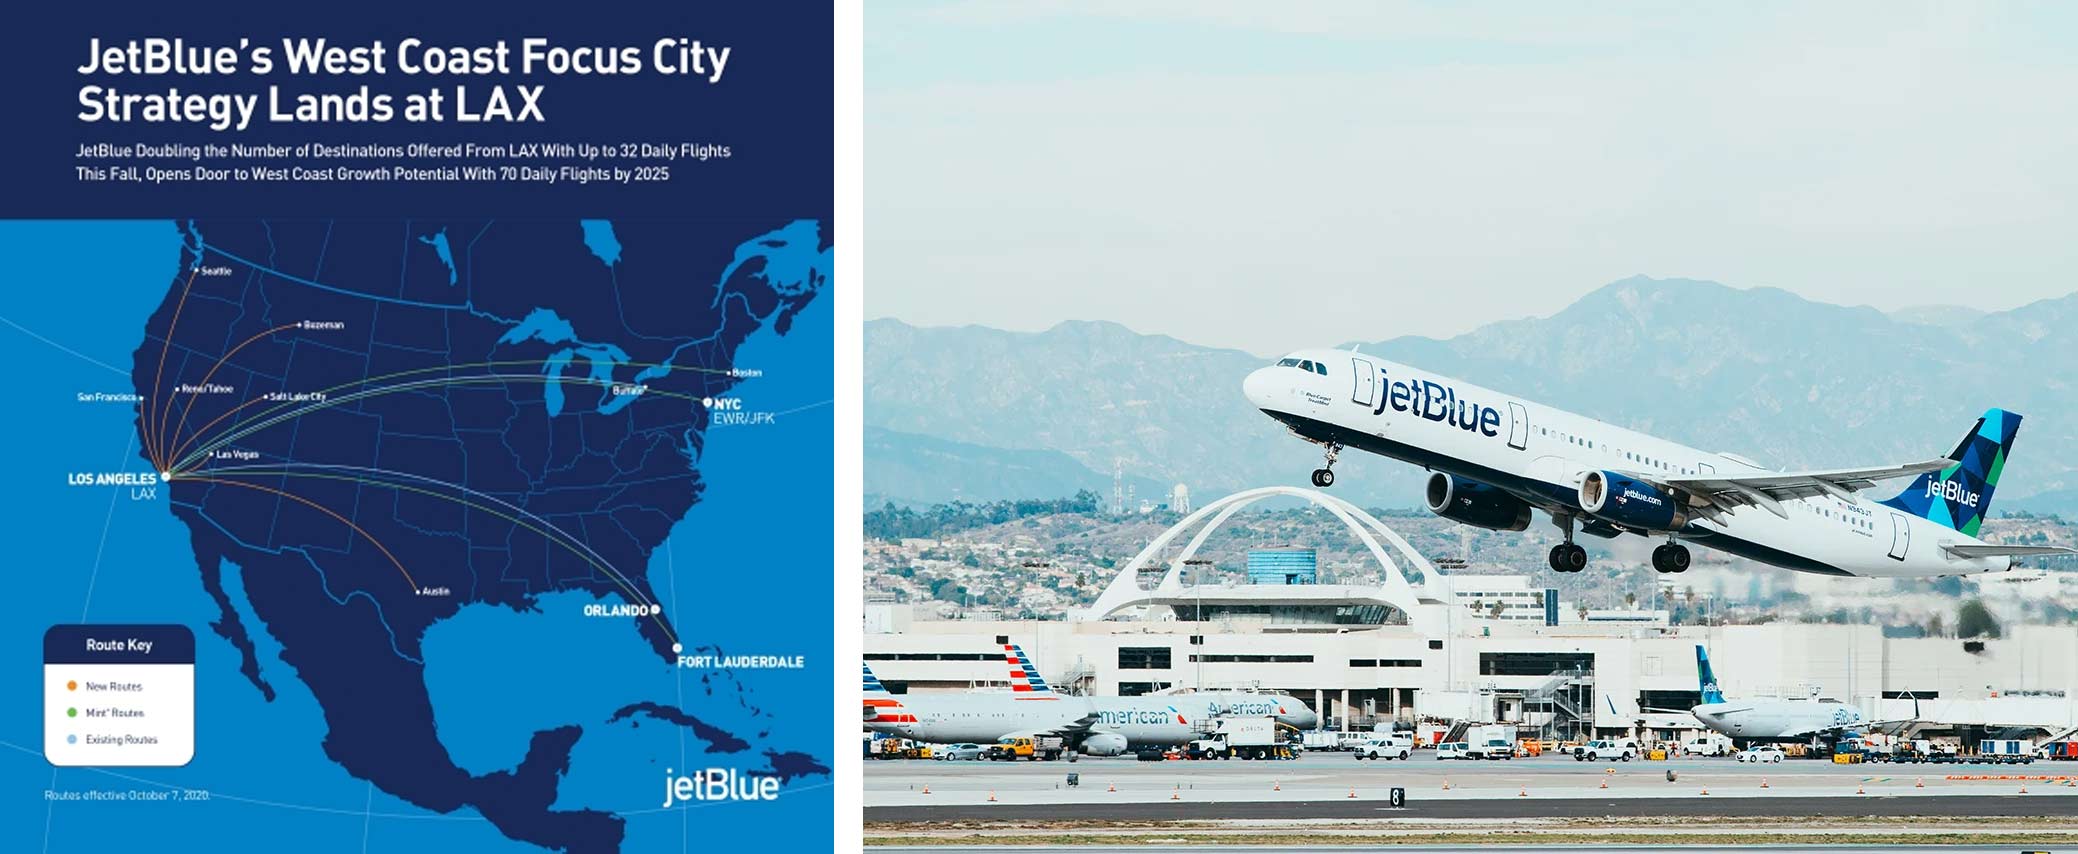 JetBlue Airways flights